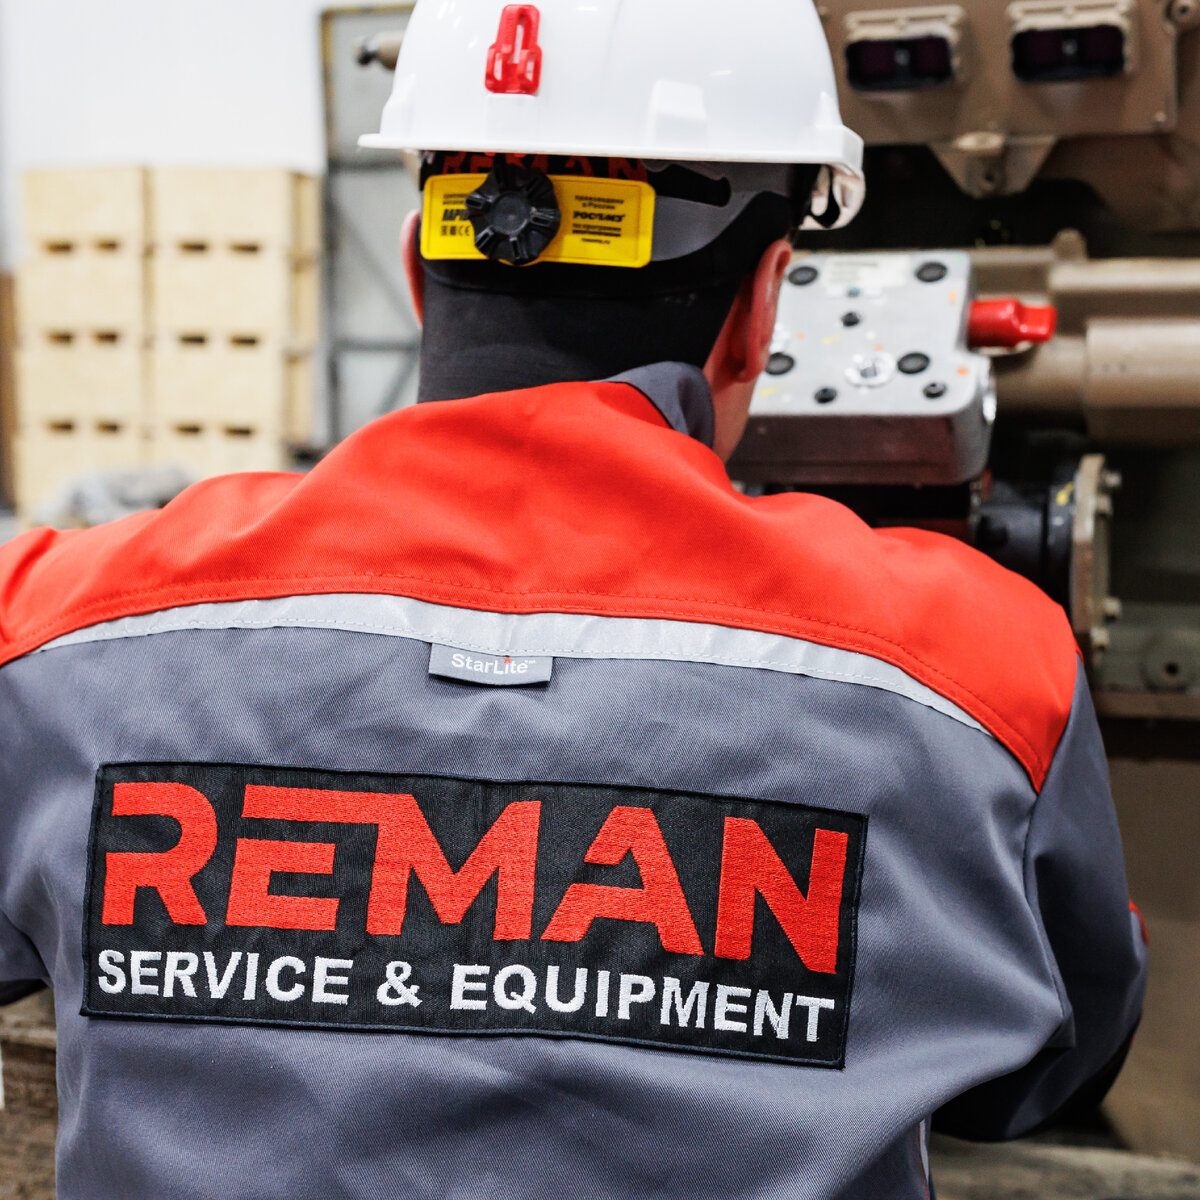 Техническое обслуживание и ремонт оборудования на объектах заказчика — важная часть нашей работы.